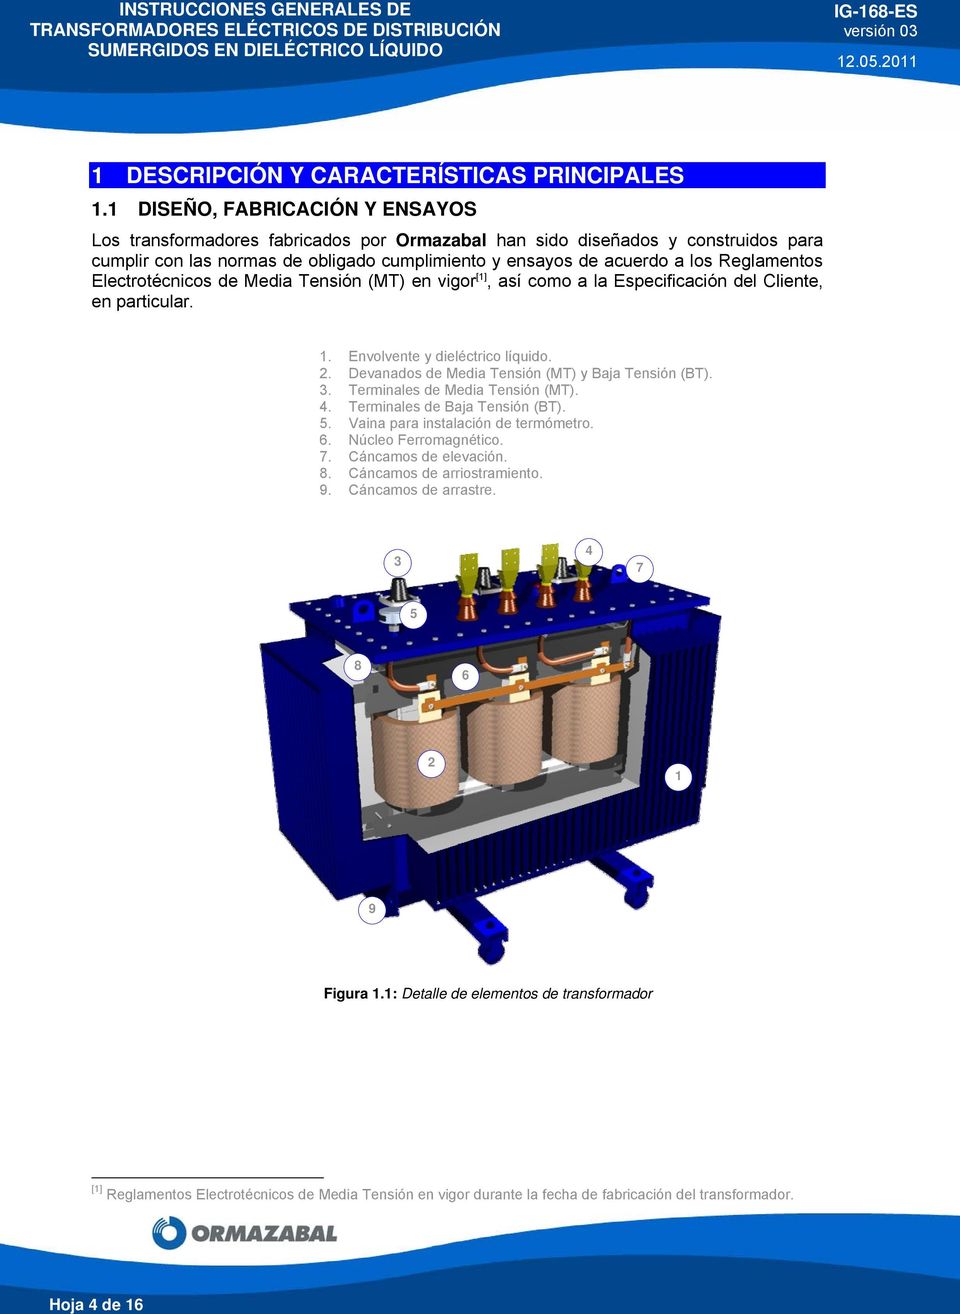 Reglamentos Electrotécnicos de Media Tensión (MT) en vigor [1], así como a la Especificación del Cliente, en particular. 1. Envolvente y dieléctrico líquido. 2.